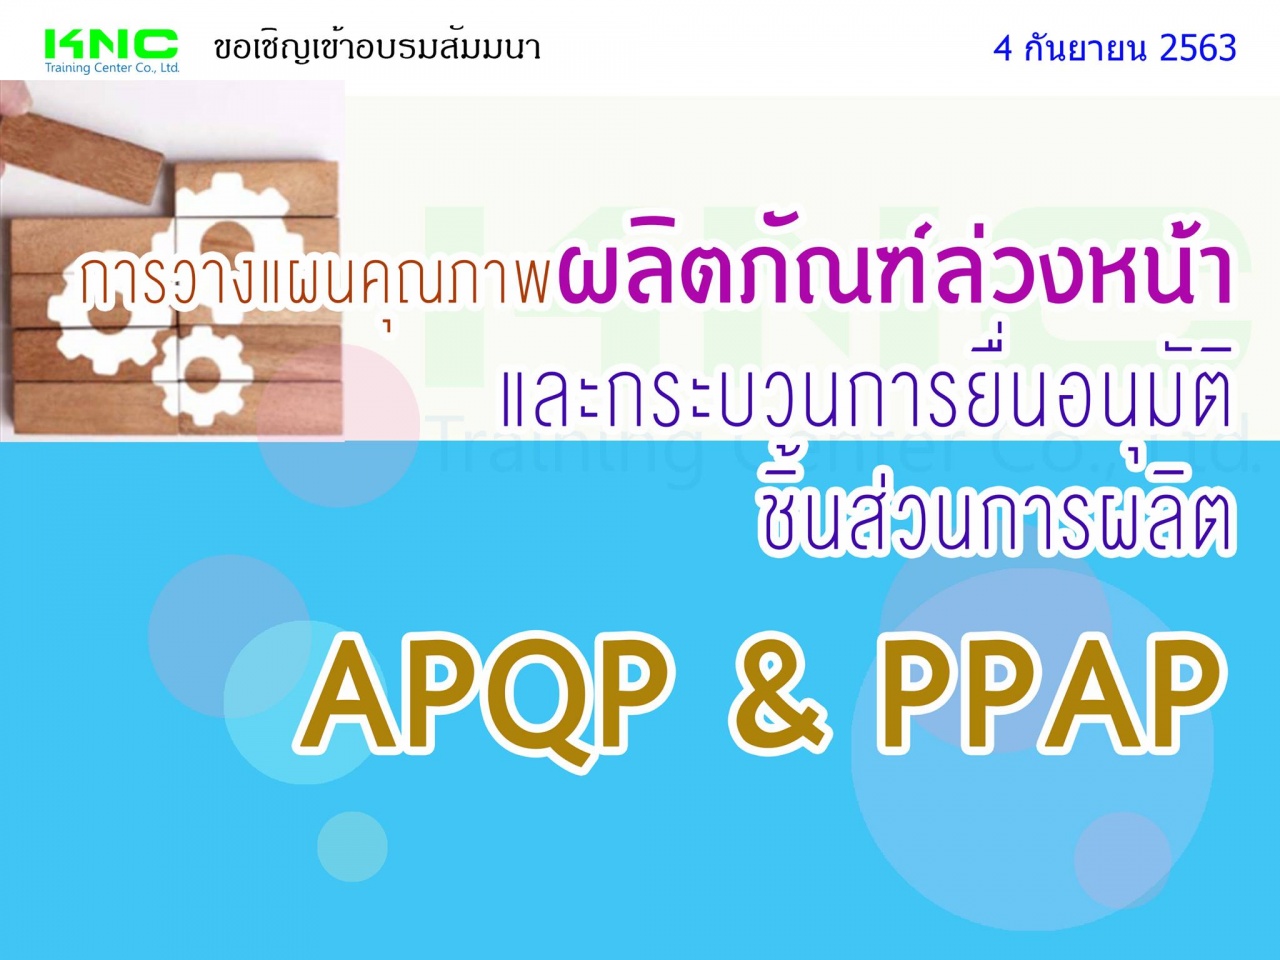 การวางแผนคุณภาพผลิตภัณฑ์ล่วงหน้าและกระบวนการยื่นอนุมัติชิ้นส่วนการผลิต (APQP & PPAP)